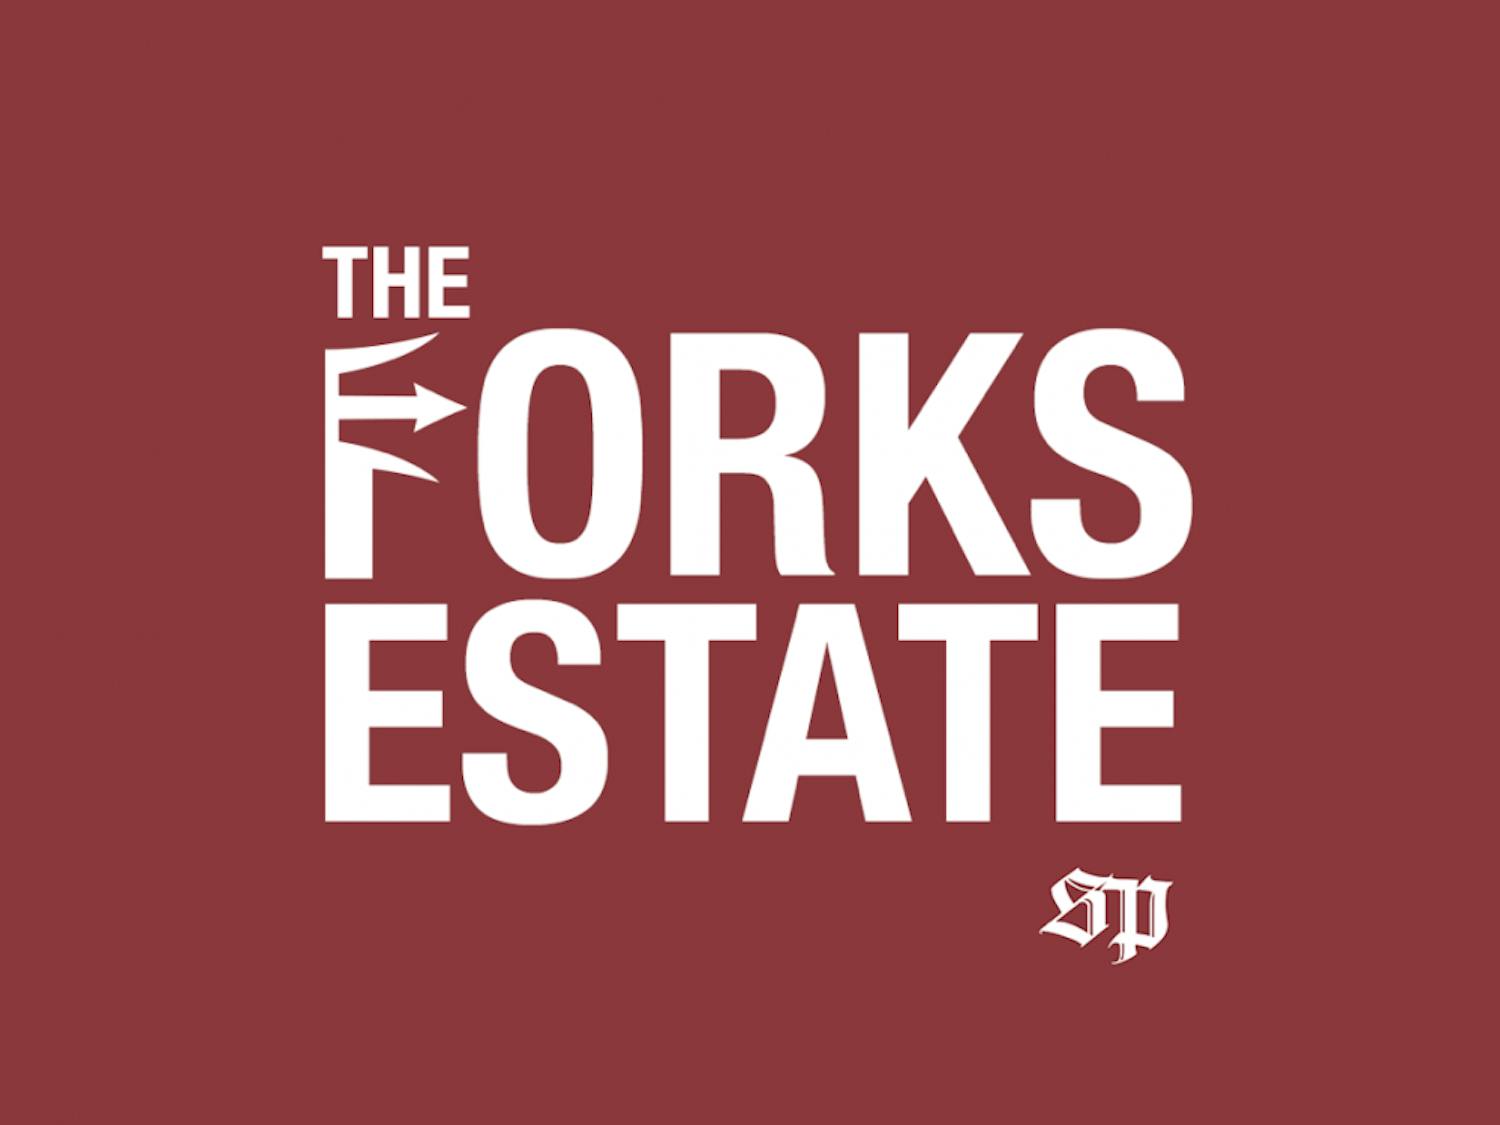 Forks Estate Image.png